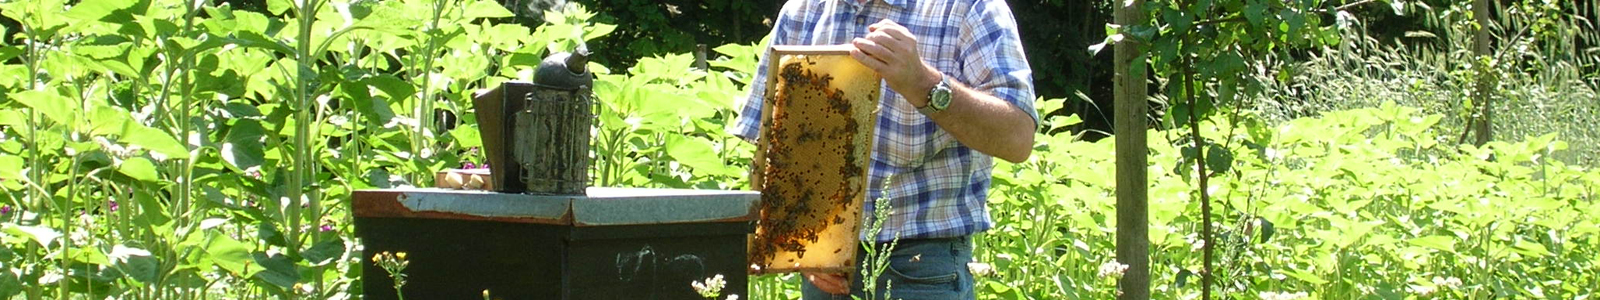 Imker entnimmt Honig aus Bienenstock ©DLR